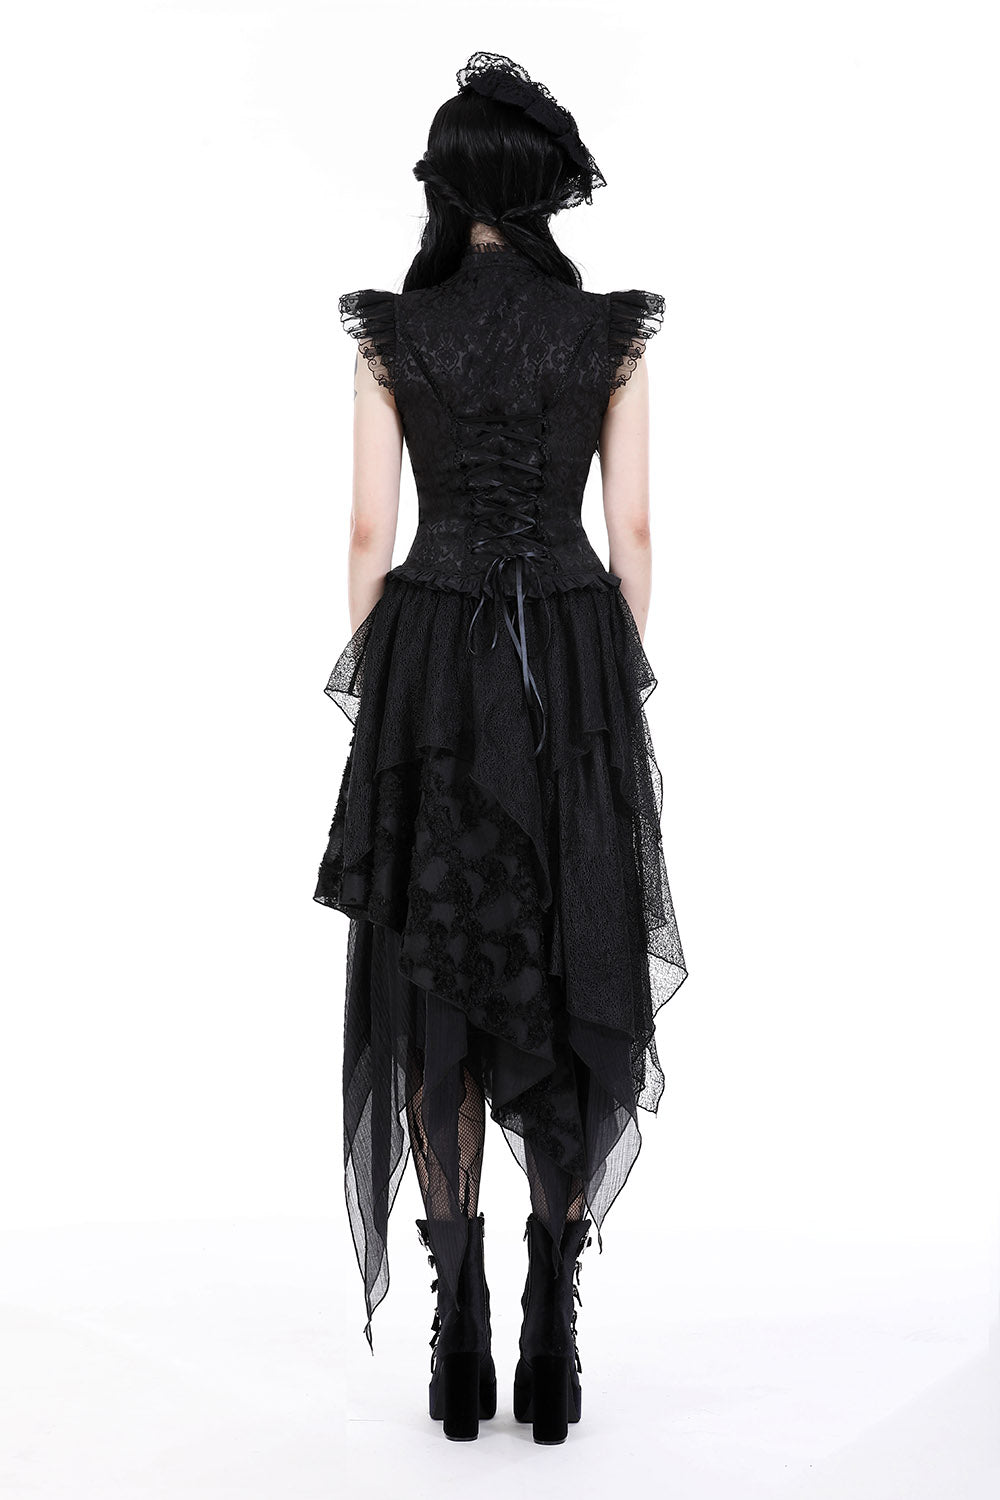 black gothic layered skirt